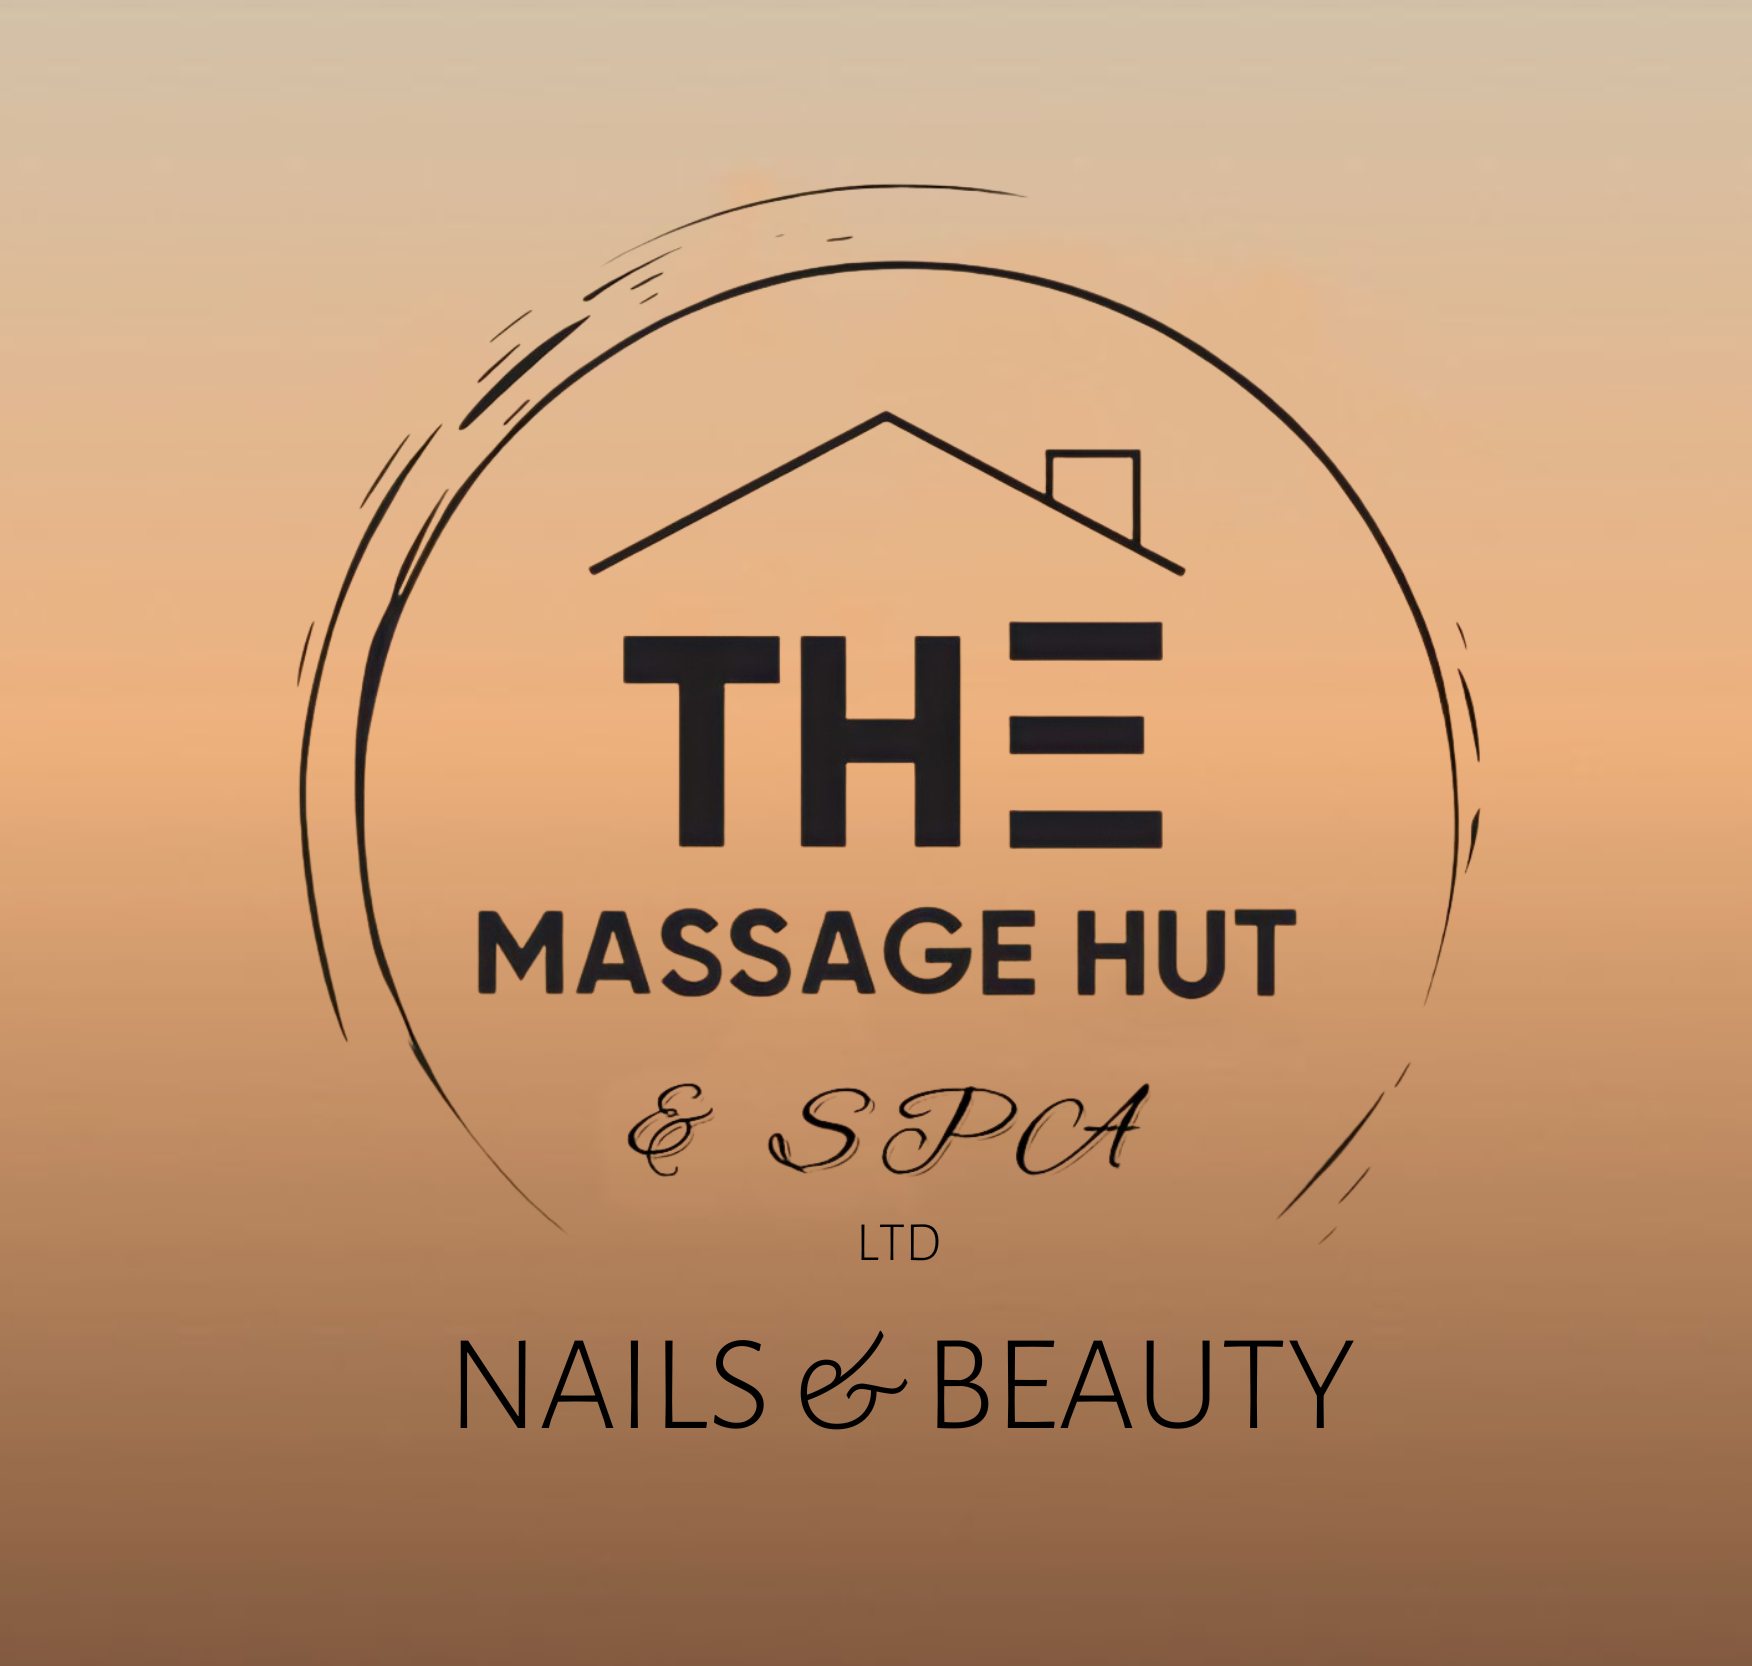 The Massage Hut & Spa LTD